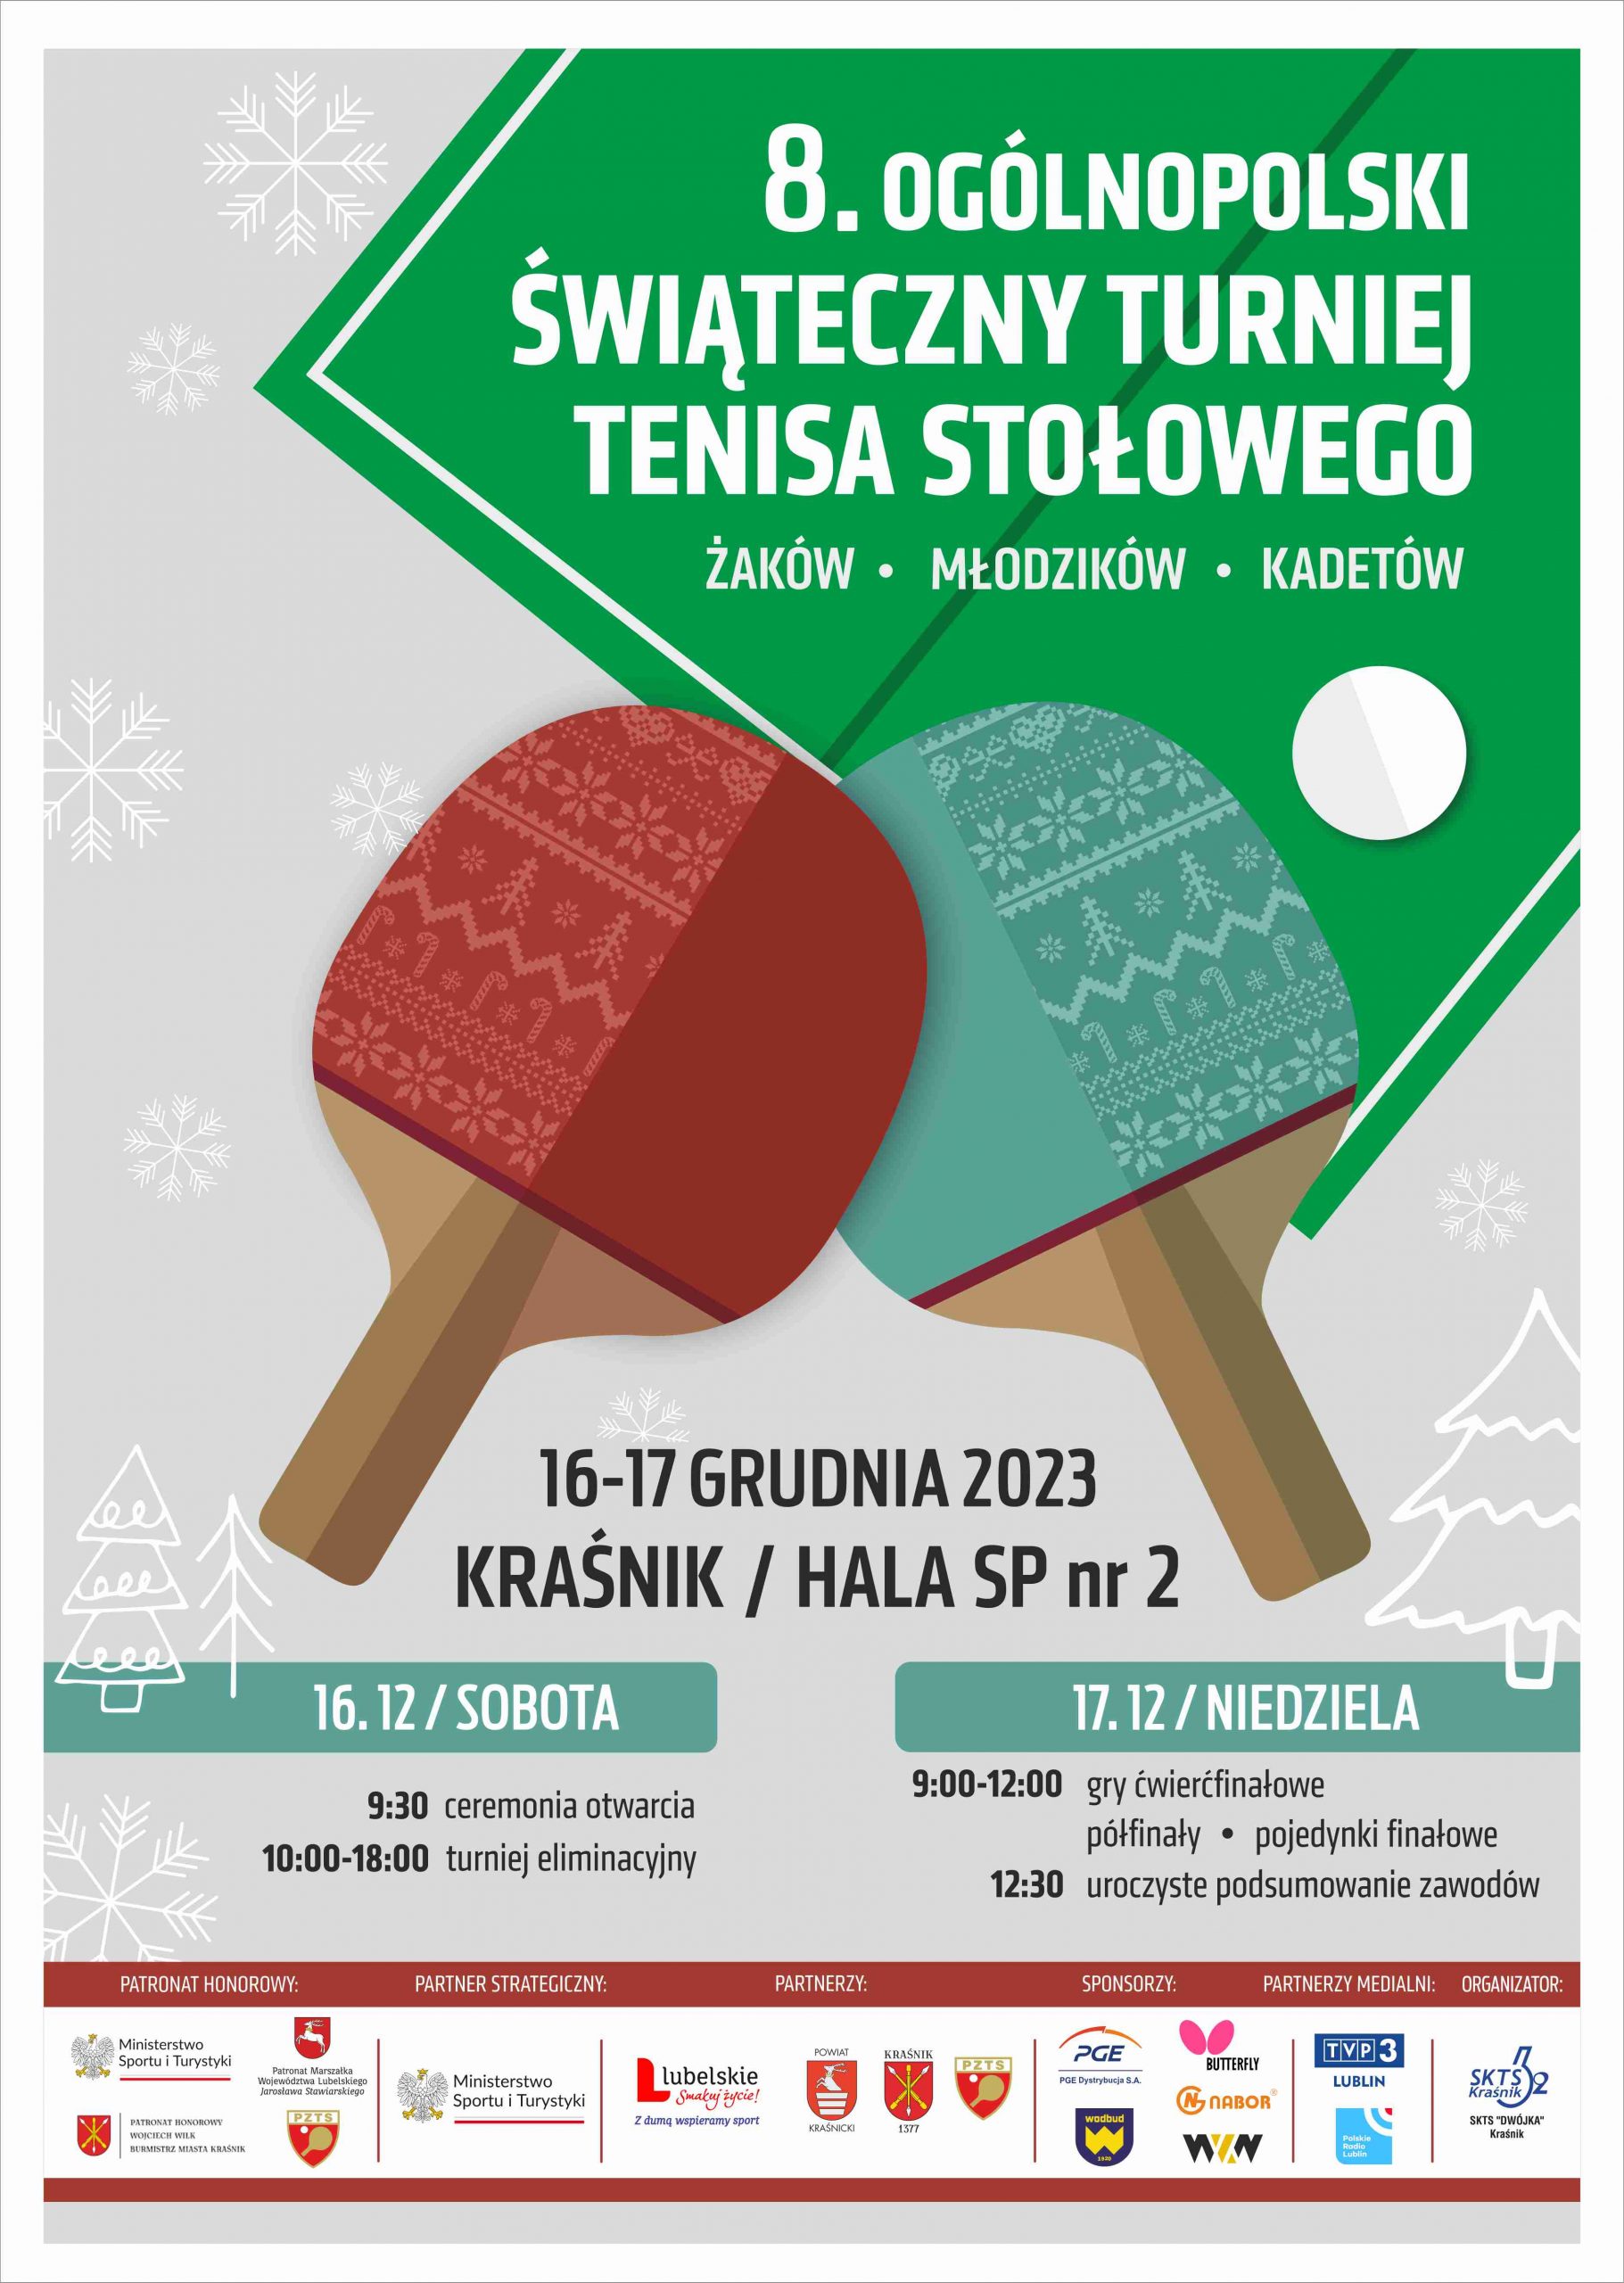 Informacyjny plakat dotyczący turnieju pn. 8. Ogólnopolski Świąteczny Turniej Tenisa Stołowego